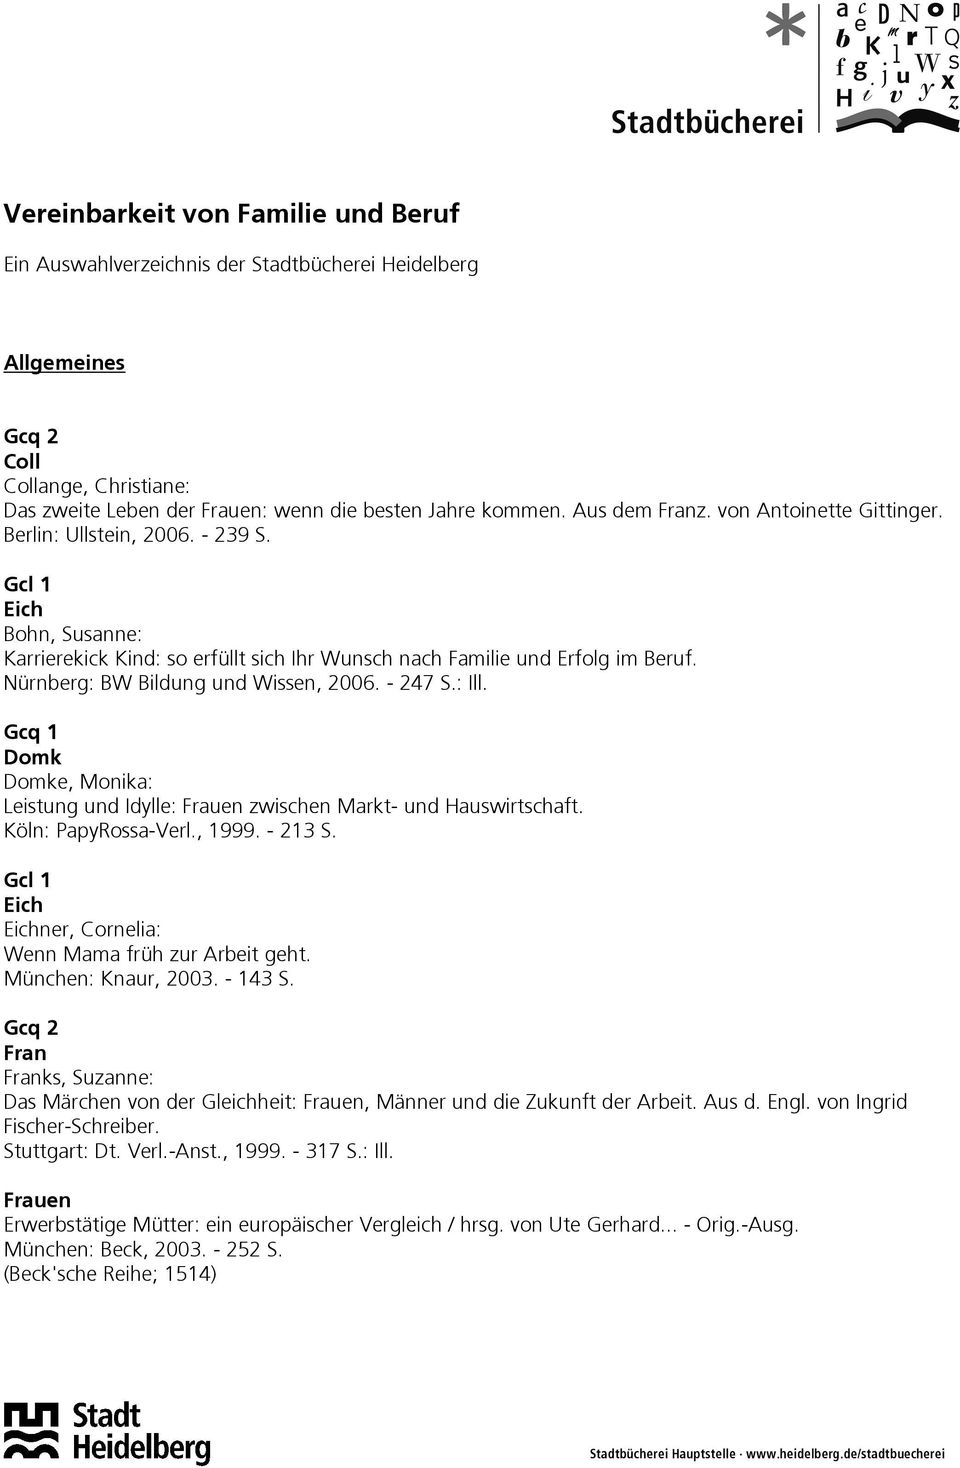 Nürnberg: BW Bildung und Wissen, 2006. - 247 S.: Ill. Gcq 1 Domk Domke, Monika: Leistung und Idylle: Frauen zwischen Markt- und Hauswirtschaft. Köln: PapyRossa-Verl., 1999. - 213 S.